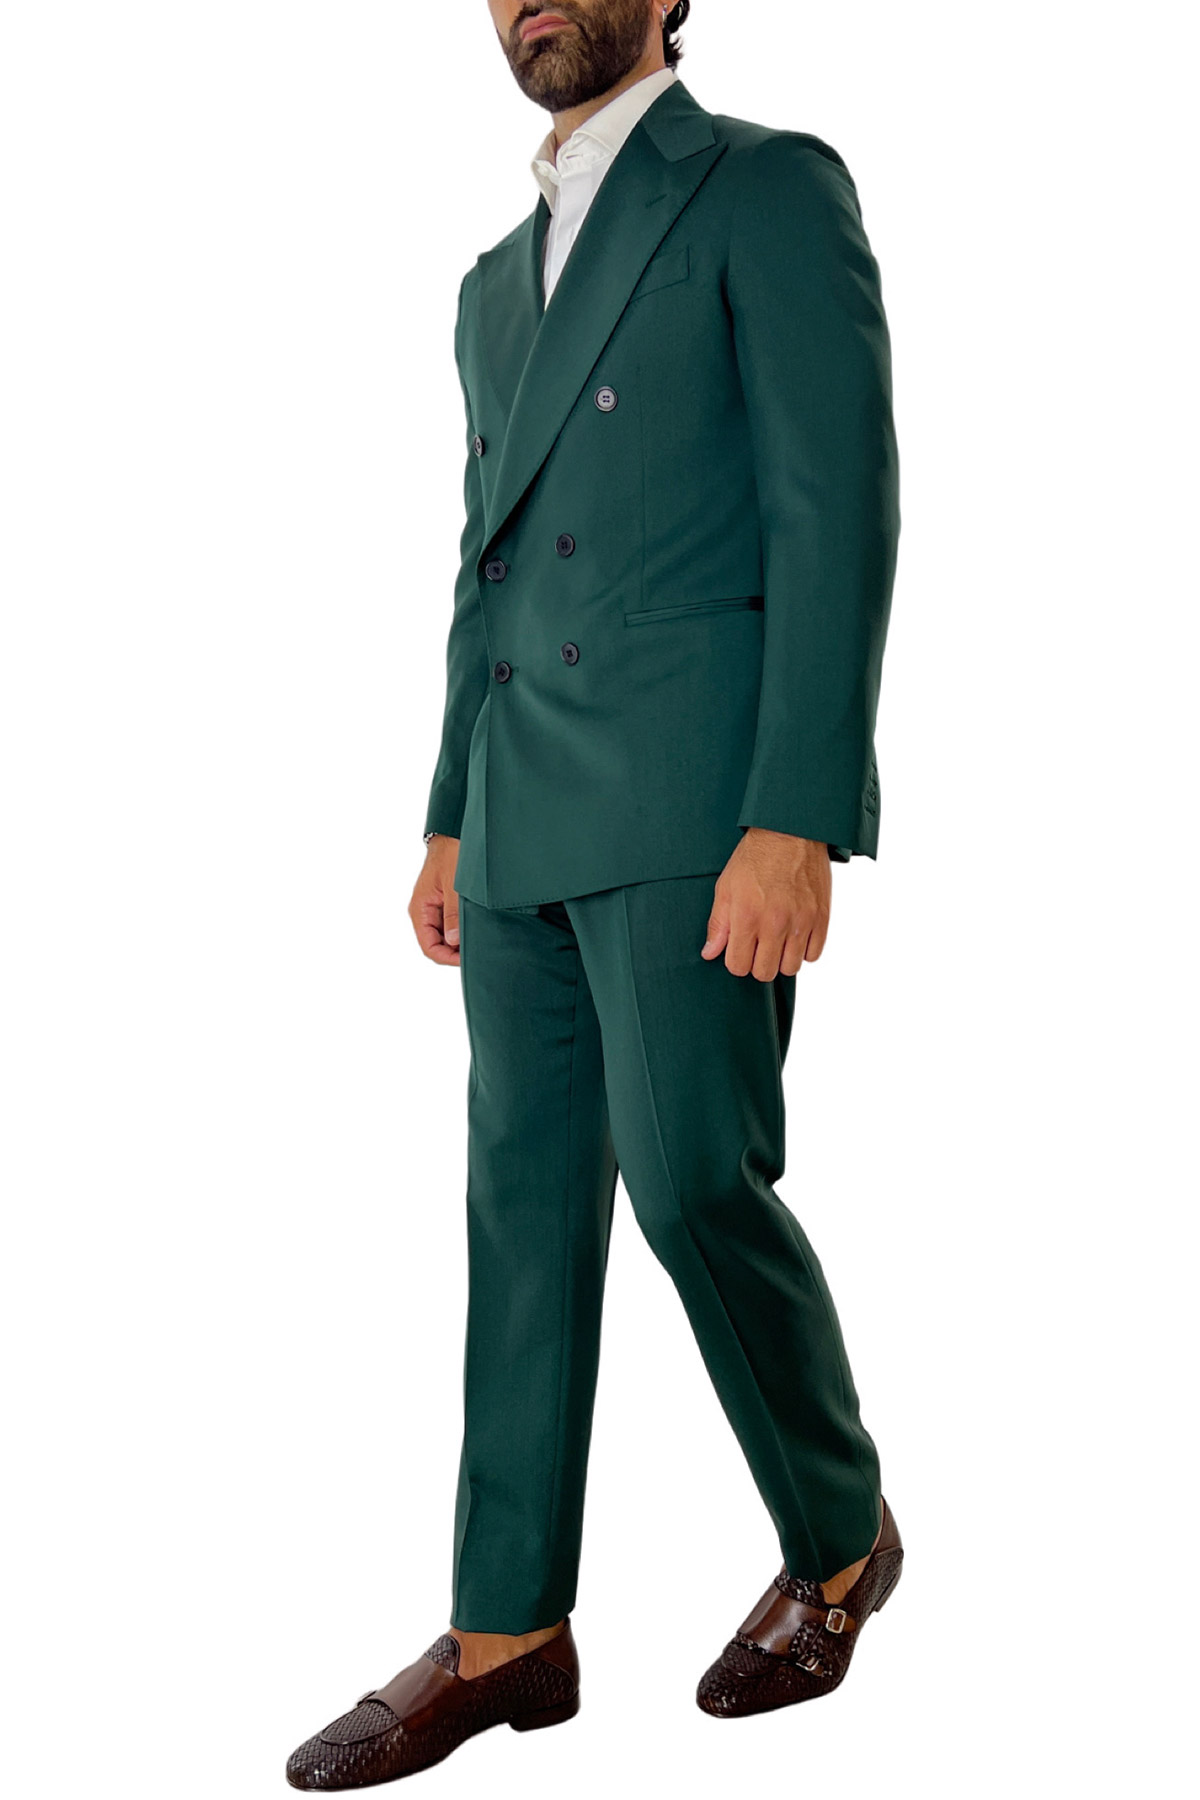 Abito uomo con giacca doppiopetto verde bottiglia in fresco lana super 130’s con rever a lancia larga e pantalone vita alta con fibbie